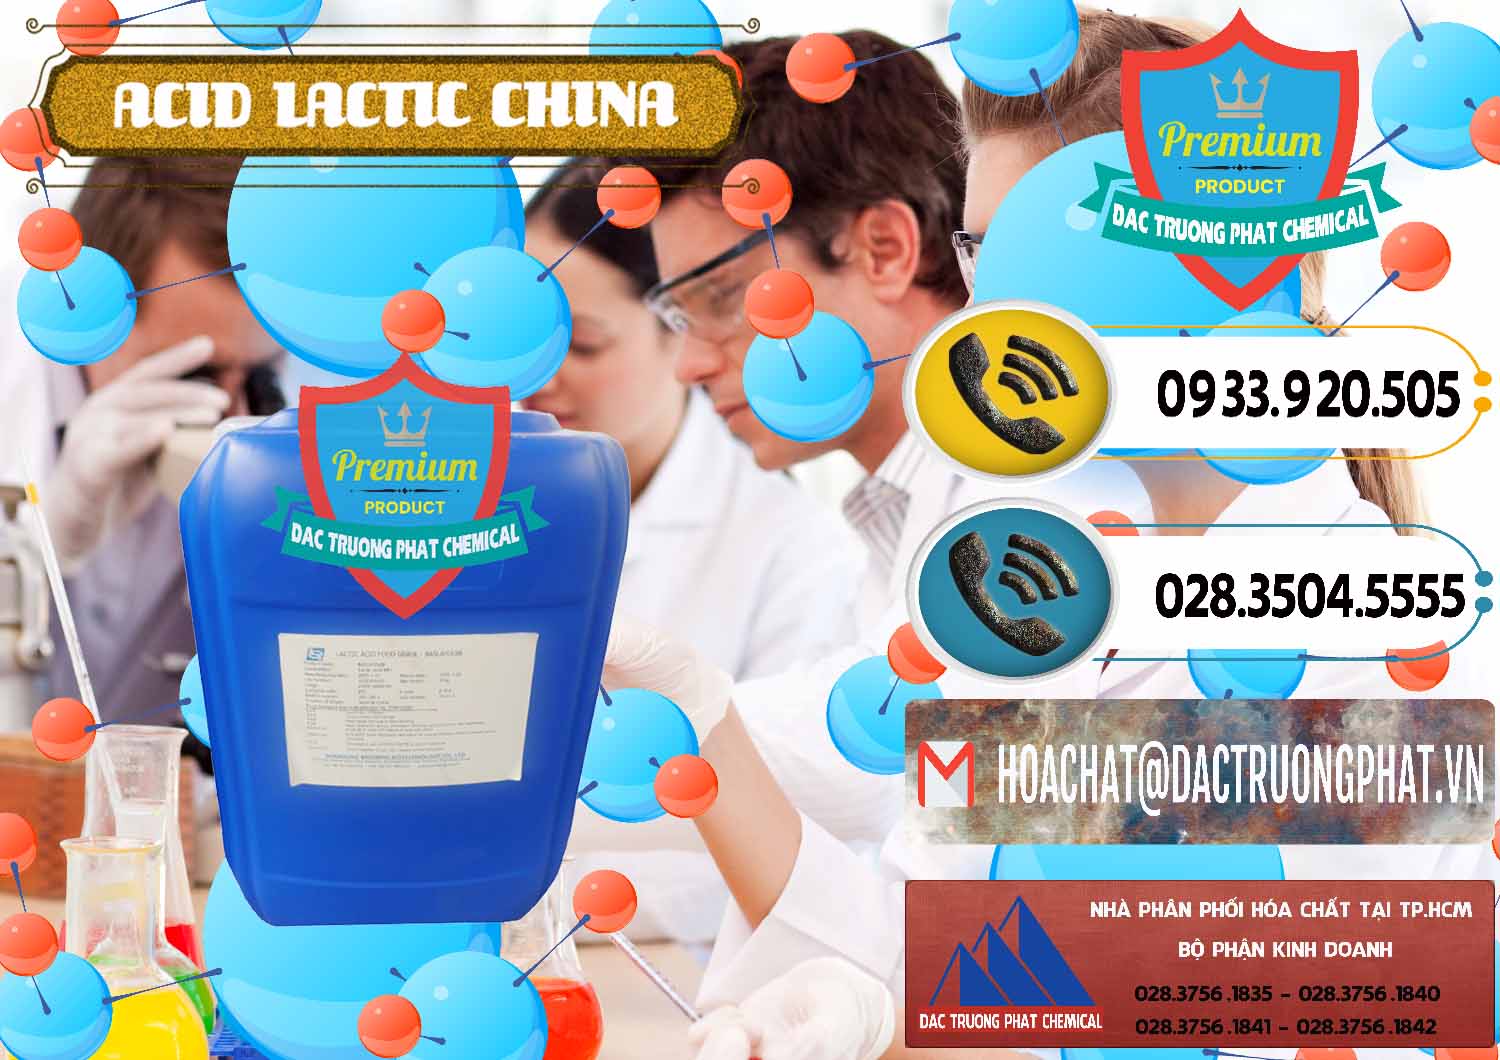 Cty kinh doanh ( bán ) Acid Lactic – Axit Lactic Trung Quốc China - 0374 - Nơi chuyên kinh doanh - cung cấp hóa chất tại TP.HCM - hoachatdetnhuom.vn